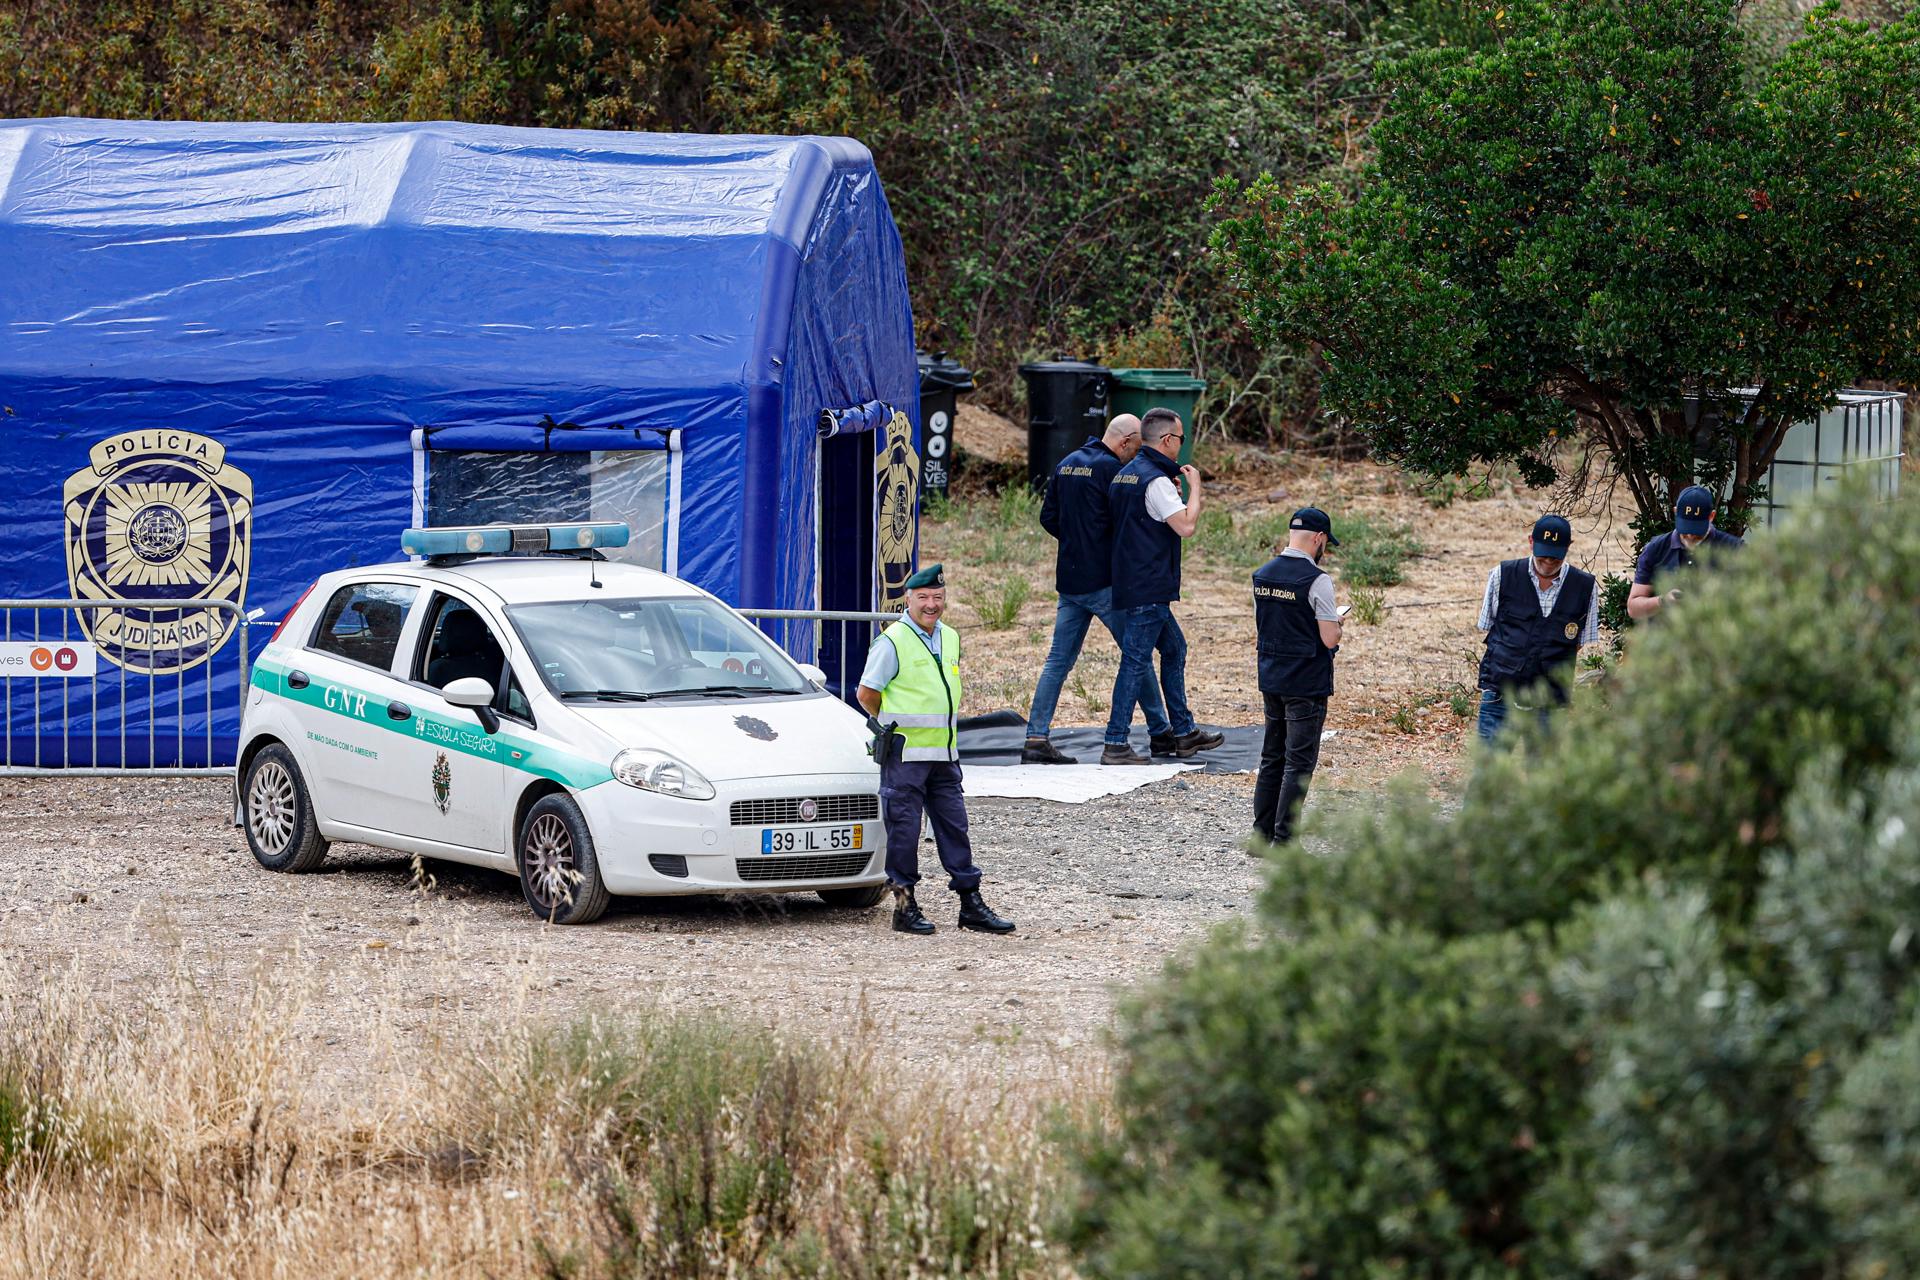 Les autoritats portugueses busquen Madelein MacCann a prop de l'embassament d'Arave / LUIS FORRA - EPA - EFE